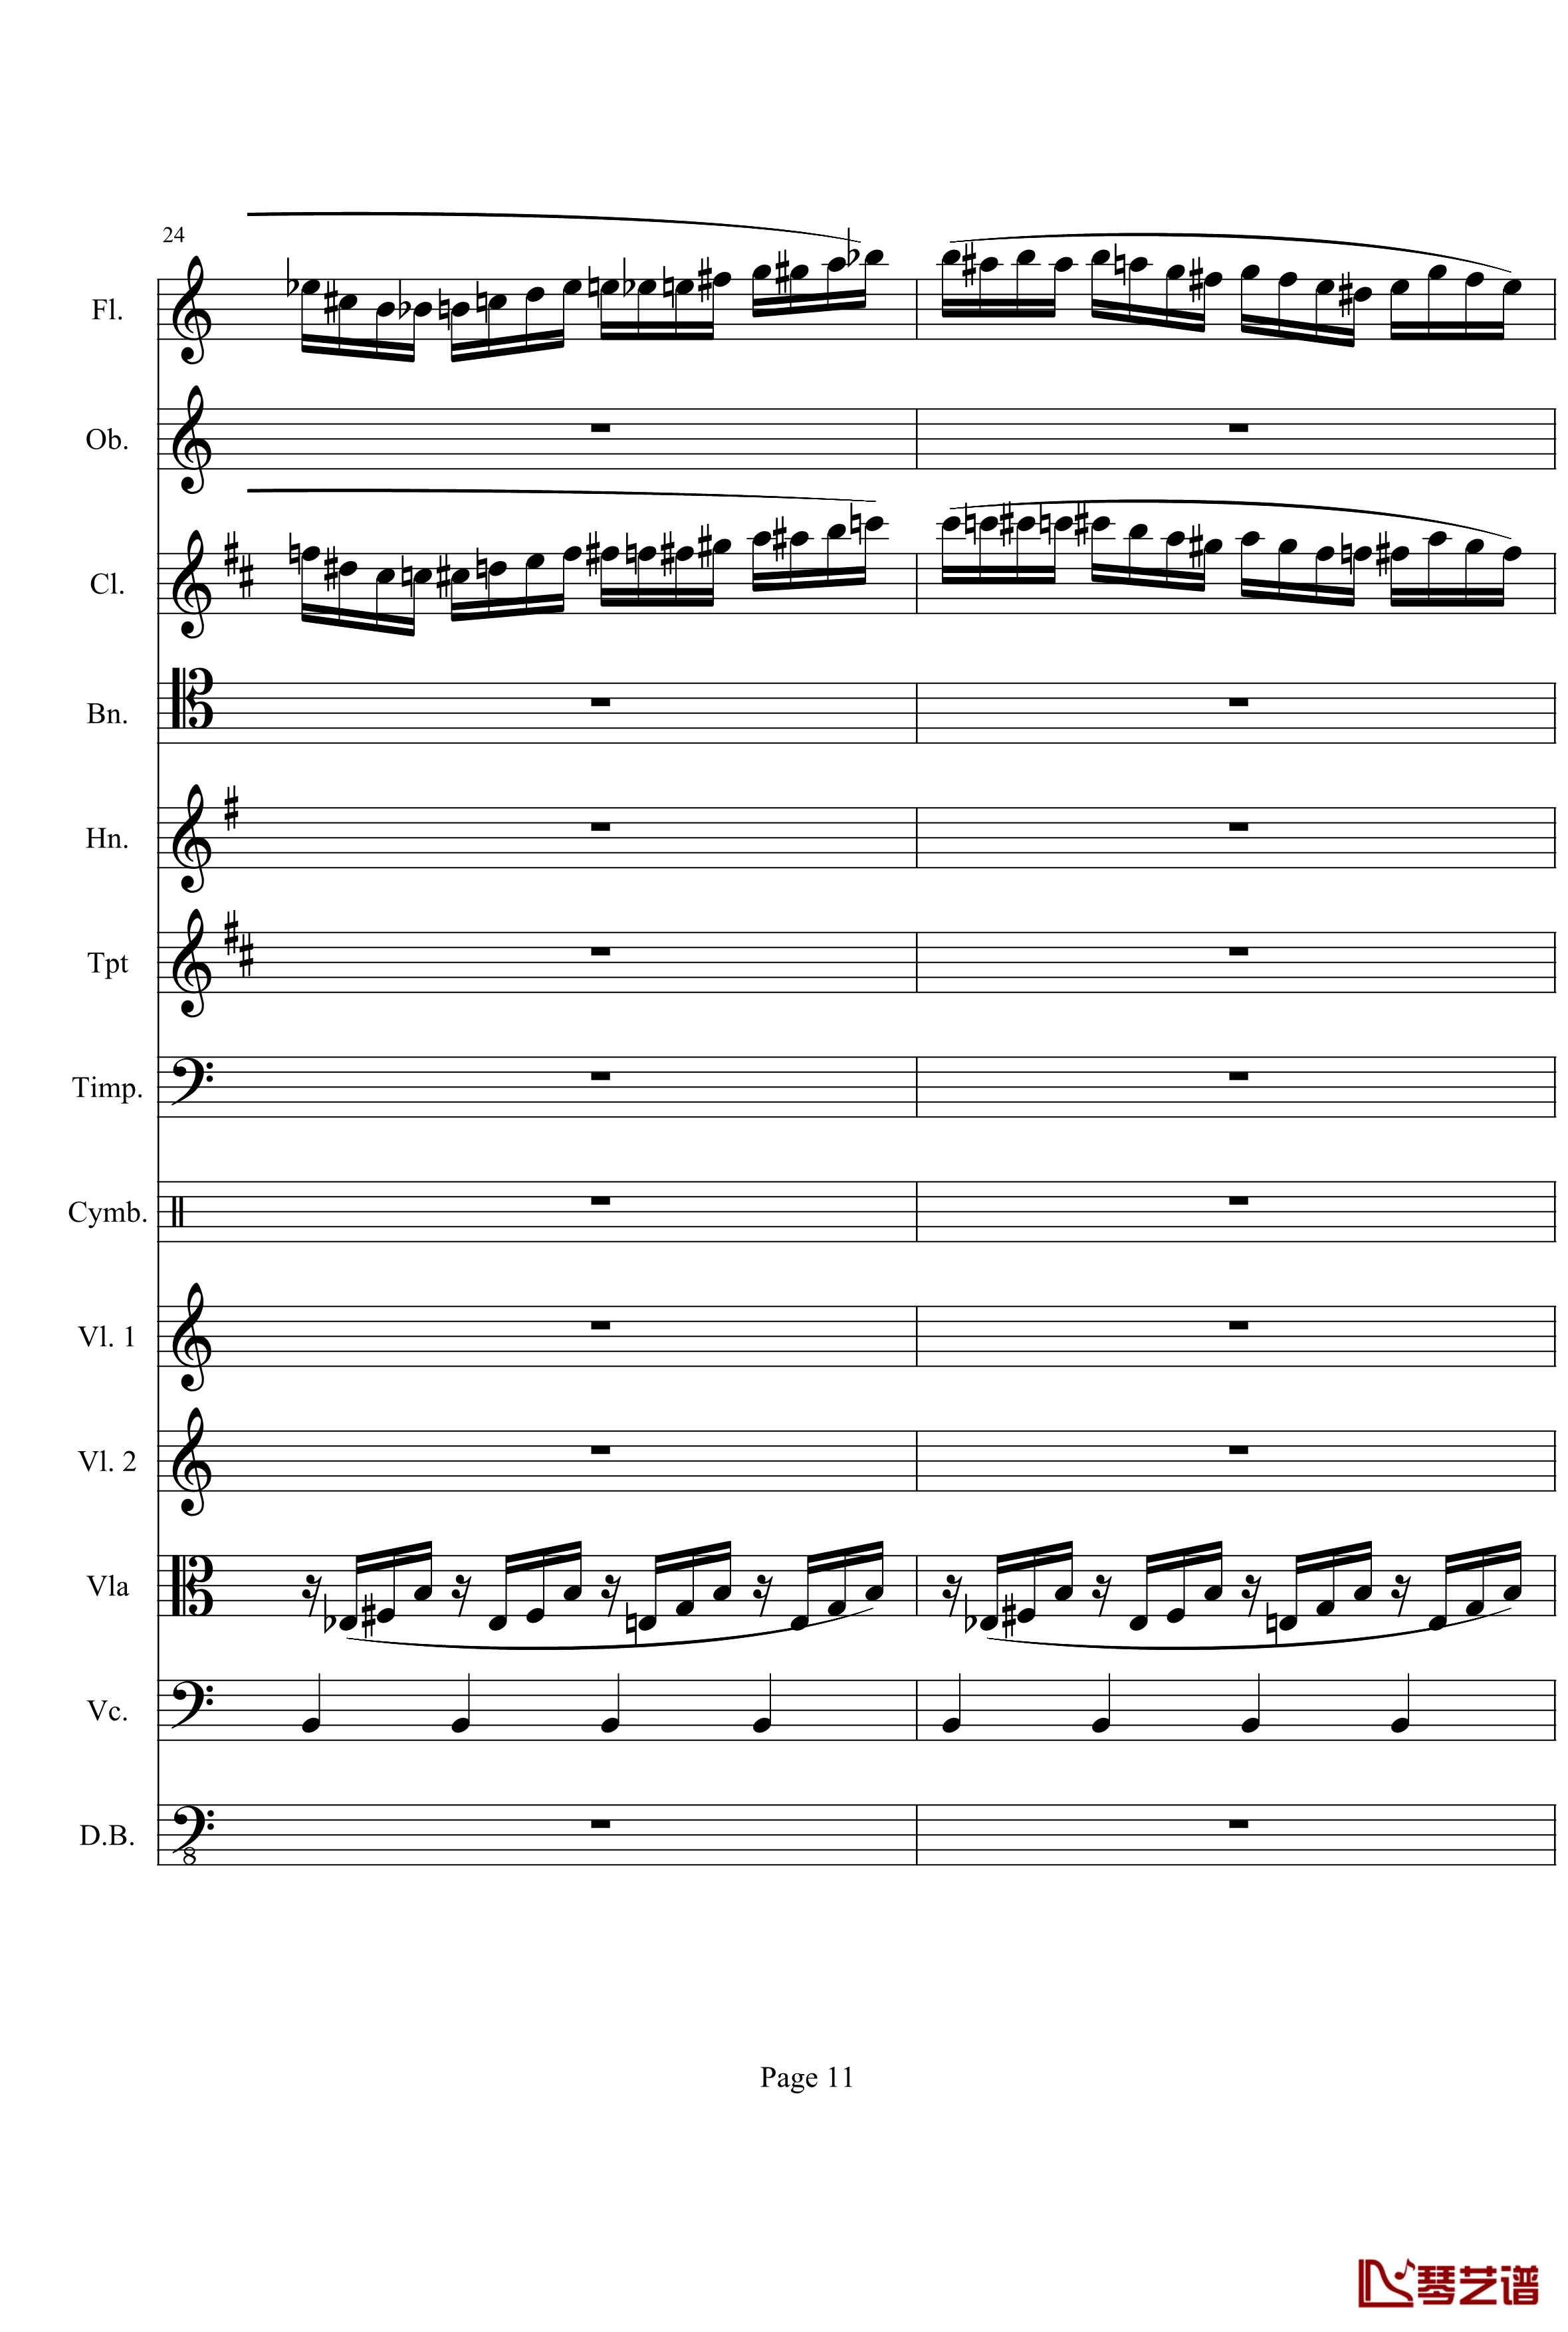 奏鸣曲之交响钢琴谱-第21首-Ⅰ-贝多芬-beethoven11